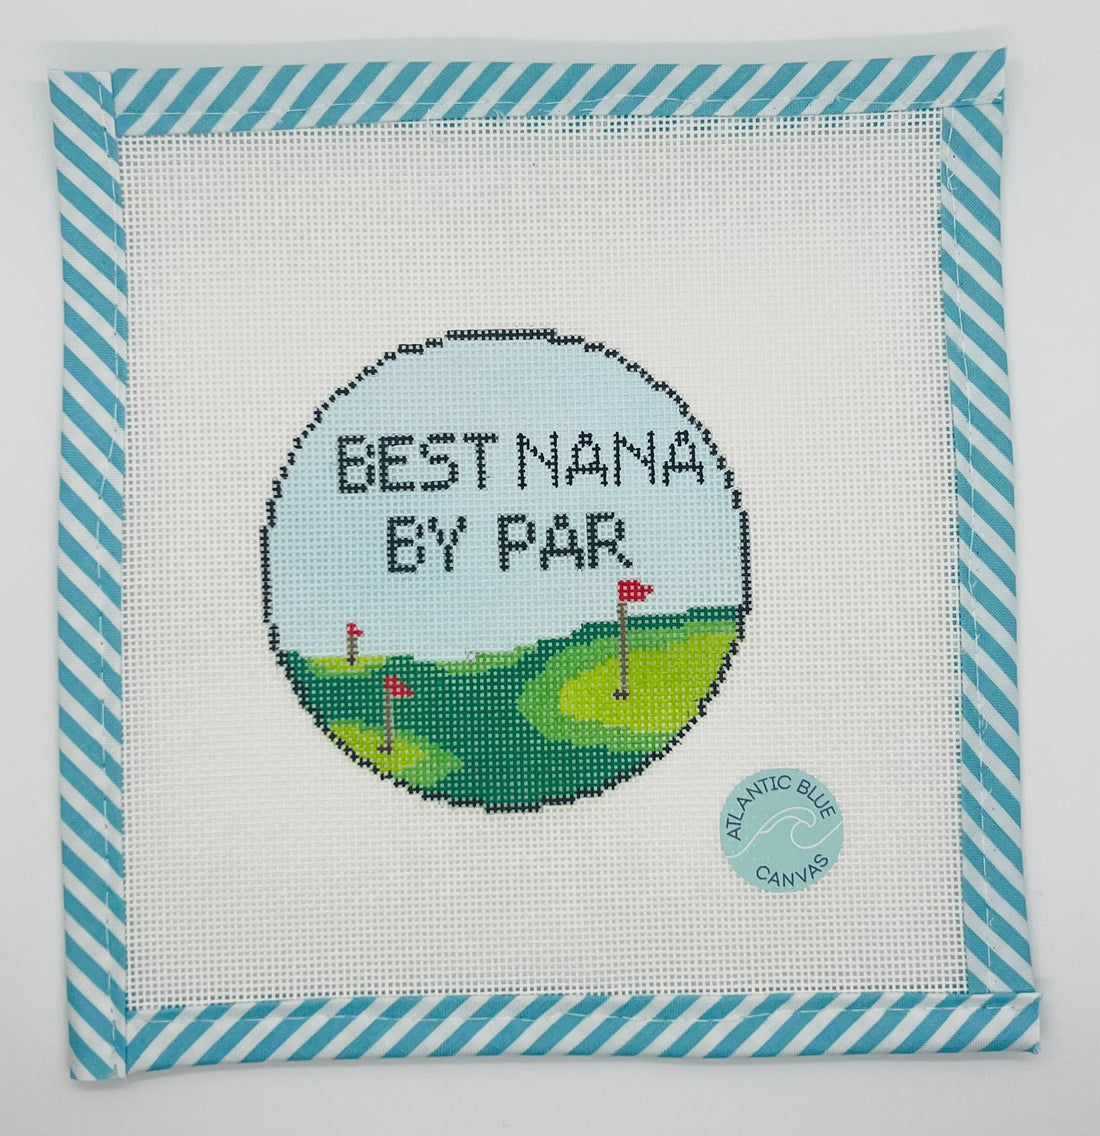 Best Nana by Par - Atlantic Blue Canvas